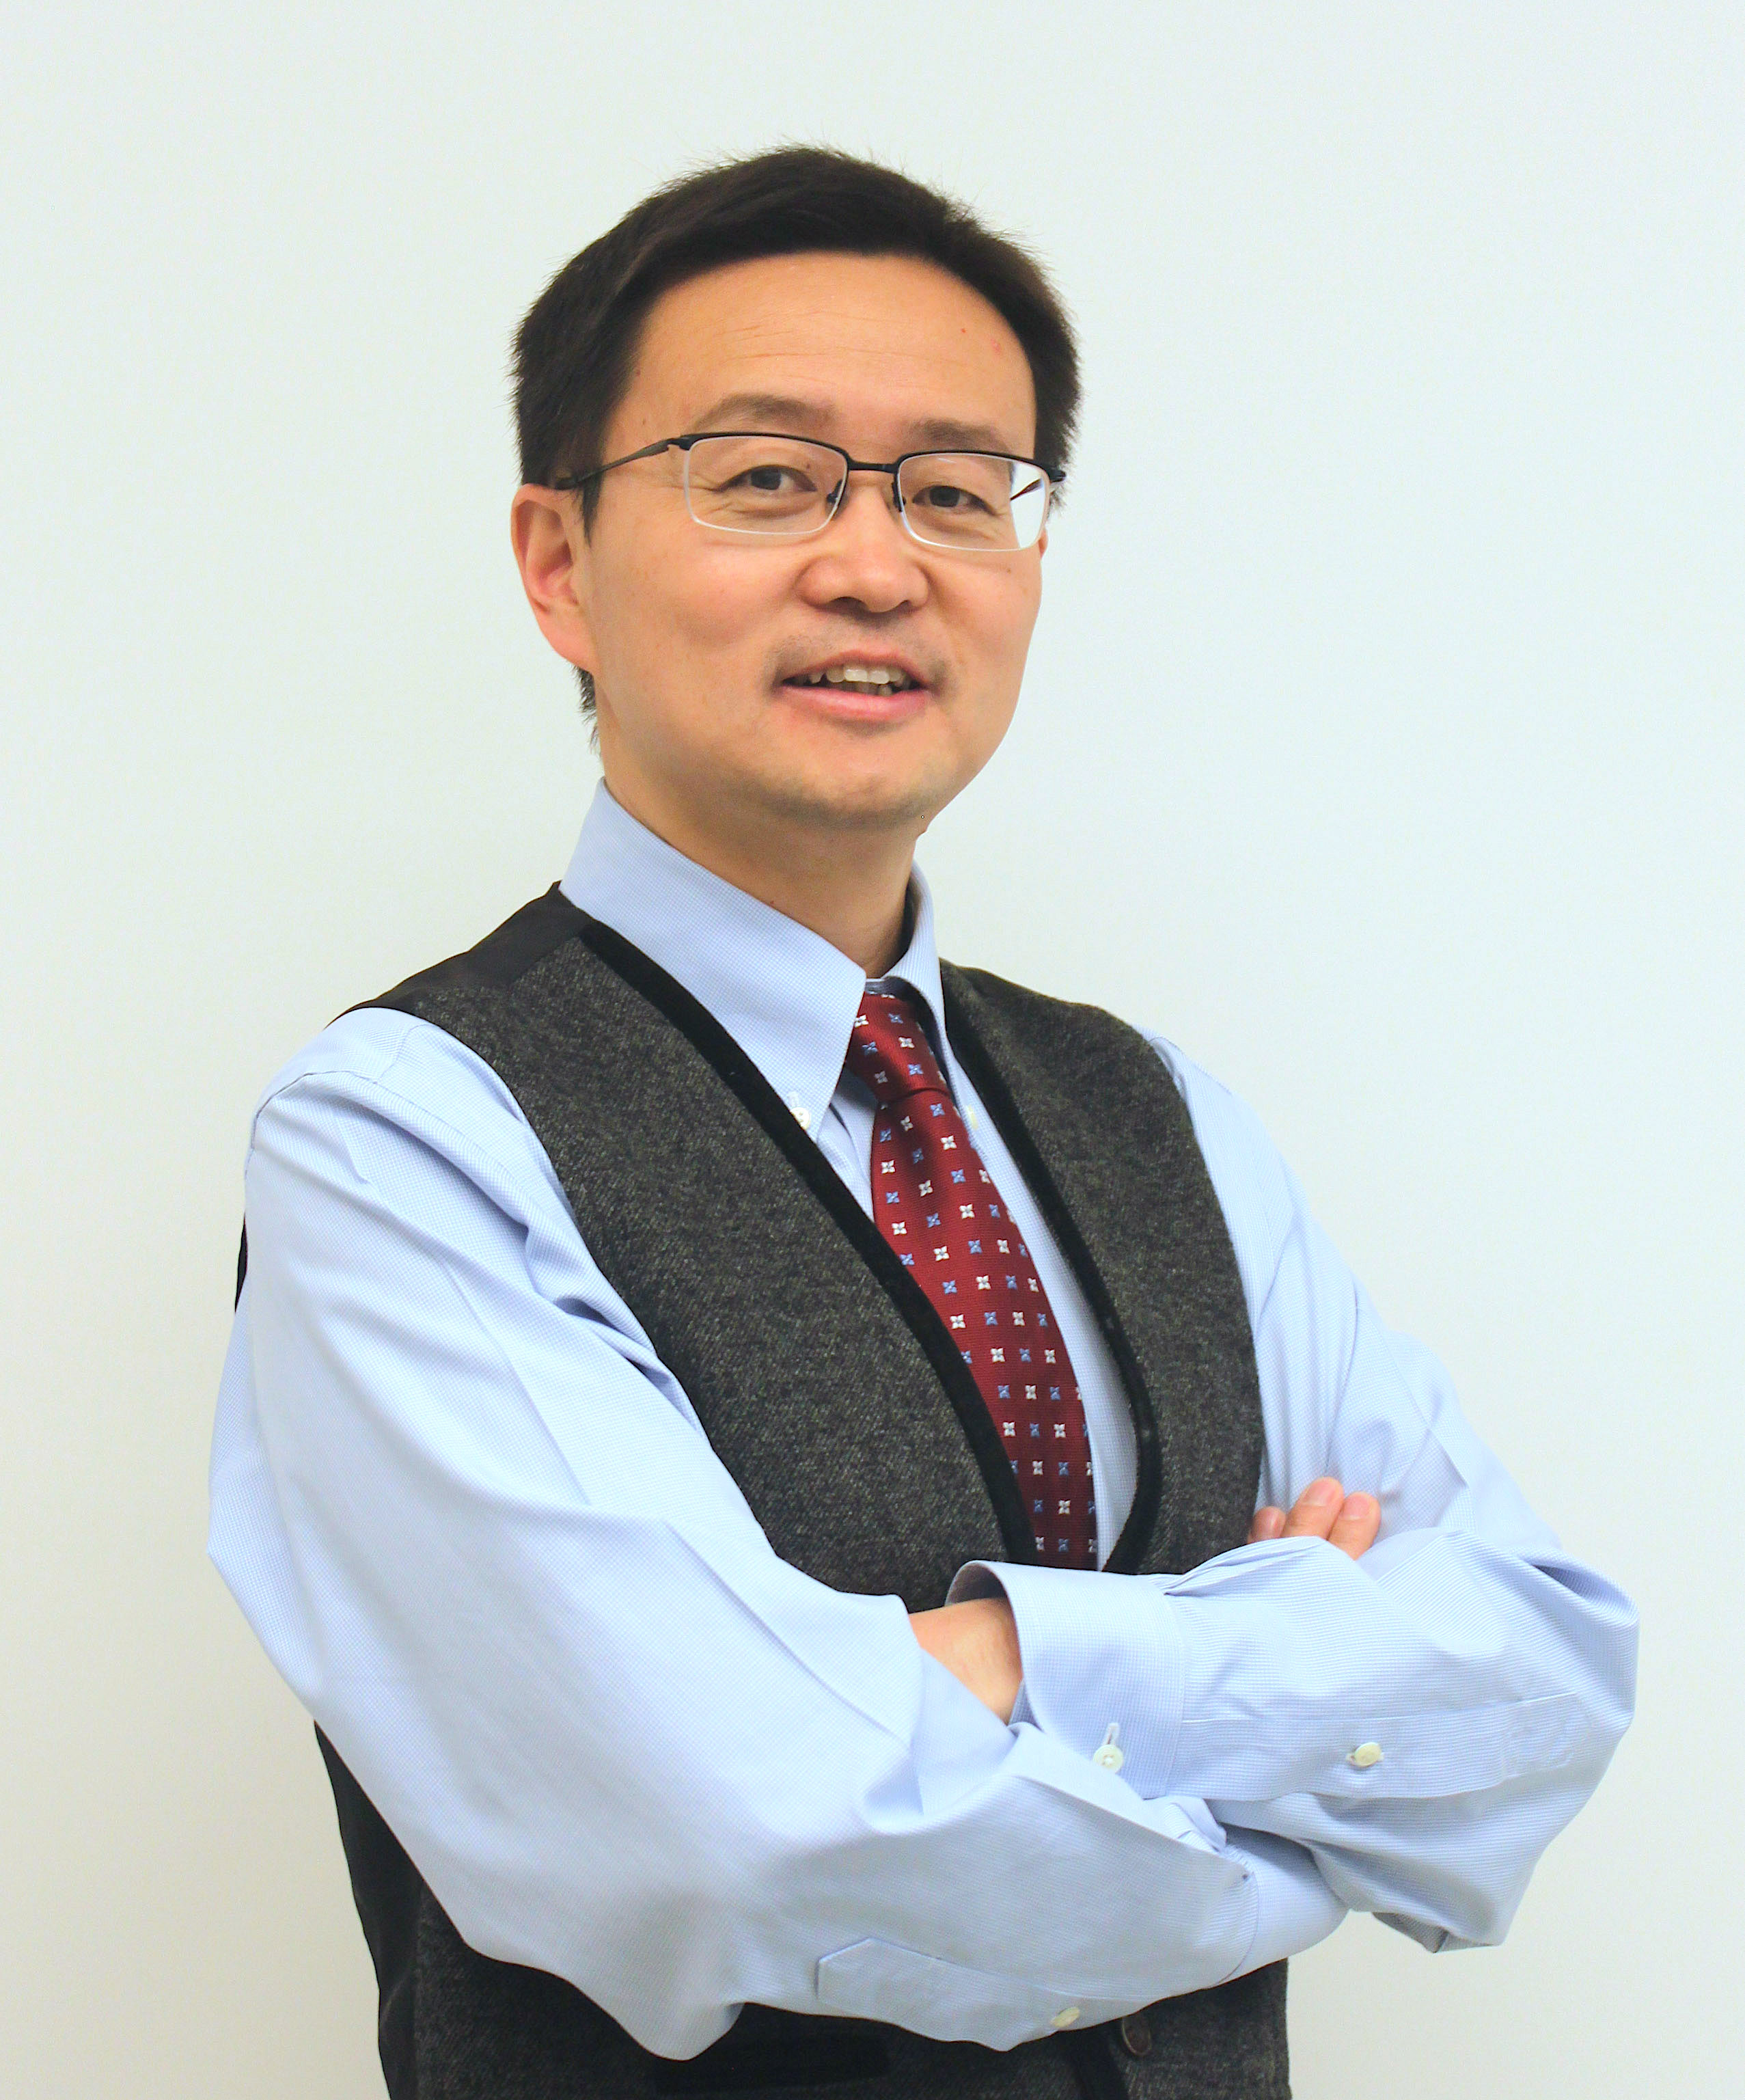 Dr. Chen UNM talk announcement